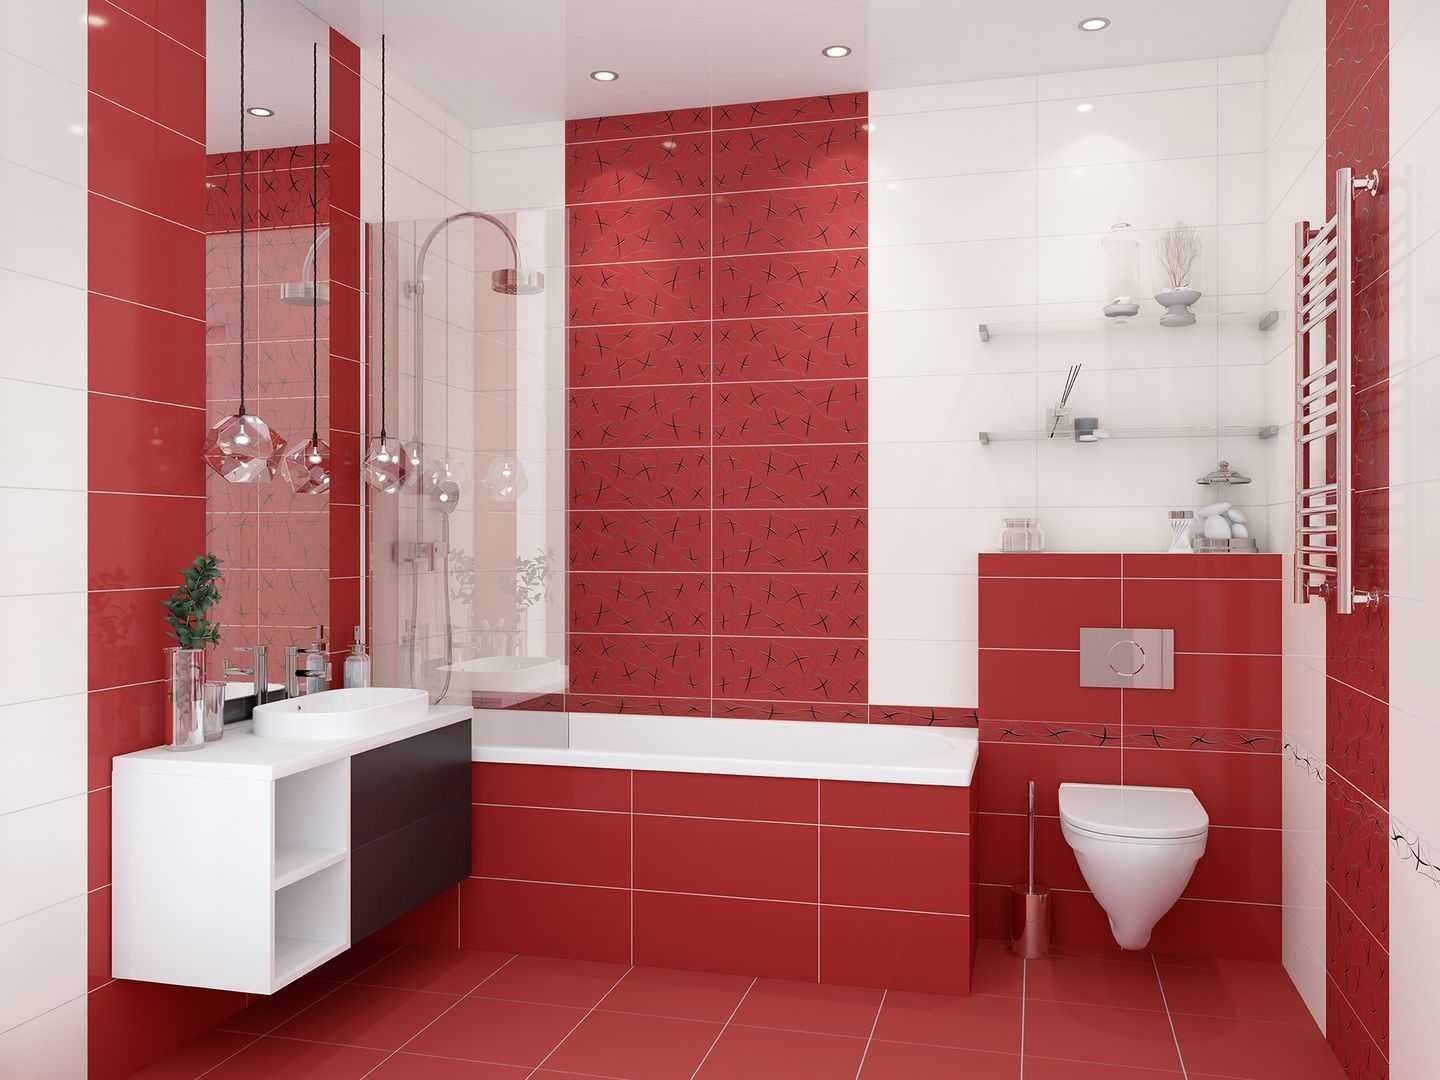 Плитка россия для ванной комнаты: обзор качества, цен и ассортимента